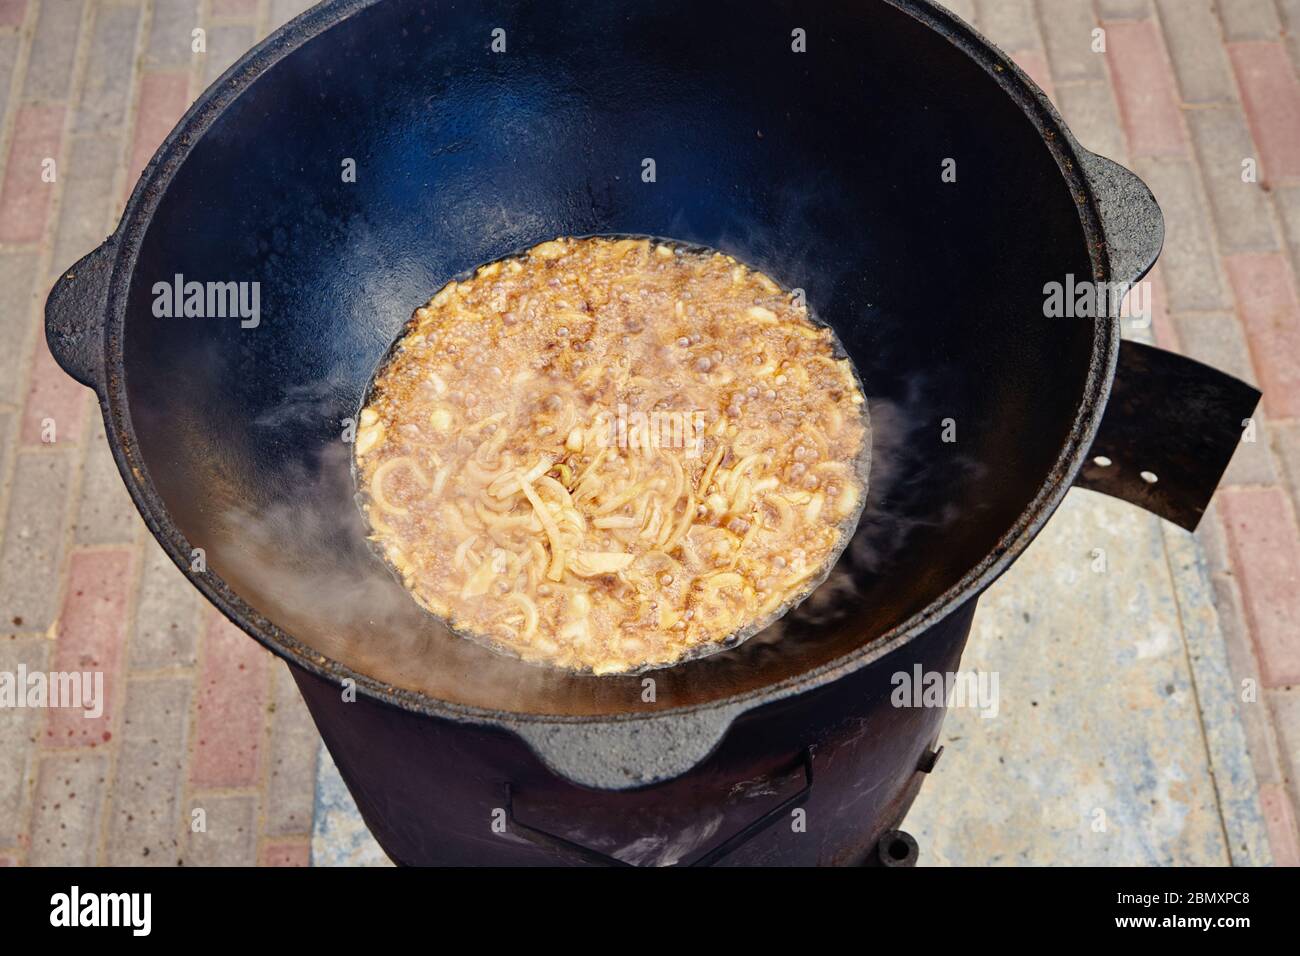 https://c8.alamy.com/compes/2bmxpc8/plato-uzbeko-nacional-pilaf-pilaw-plov-arroz-con-carne-en-sarten-grande-proceso-de-coccion-fuego-abierto-cocinar-en-un-caldero-al-fuego-etapas-de-preparacion-2bmxpc8.jpg